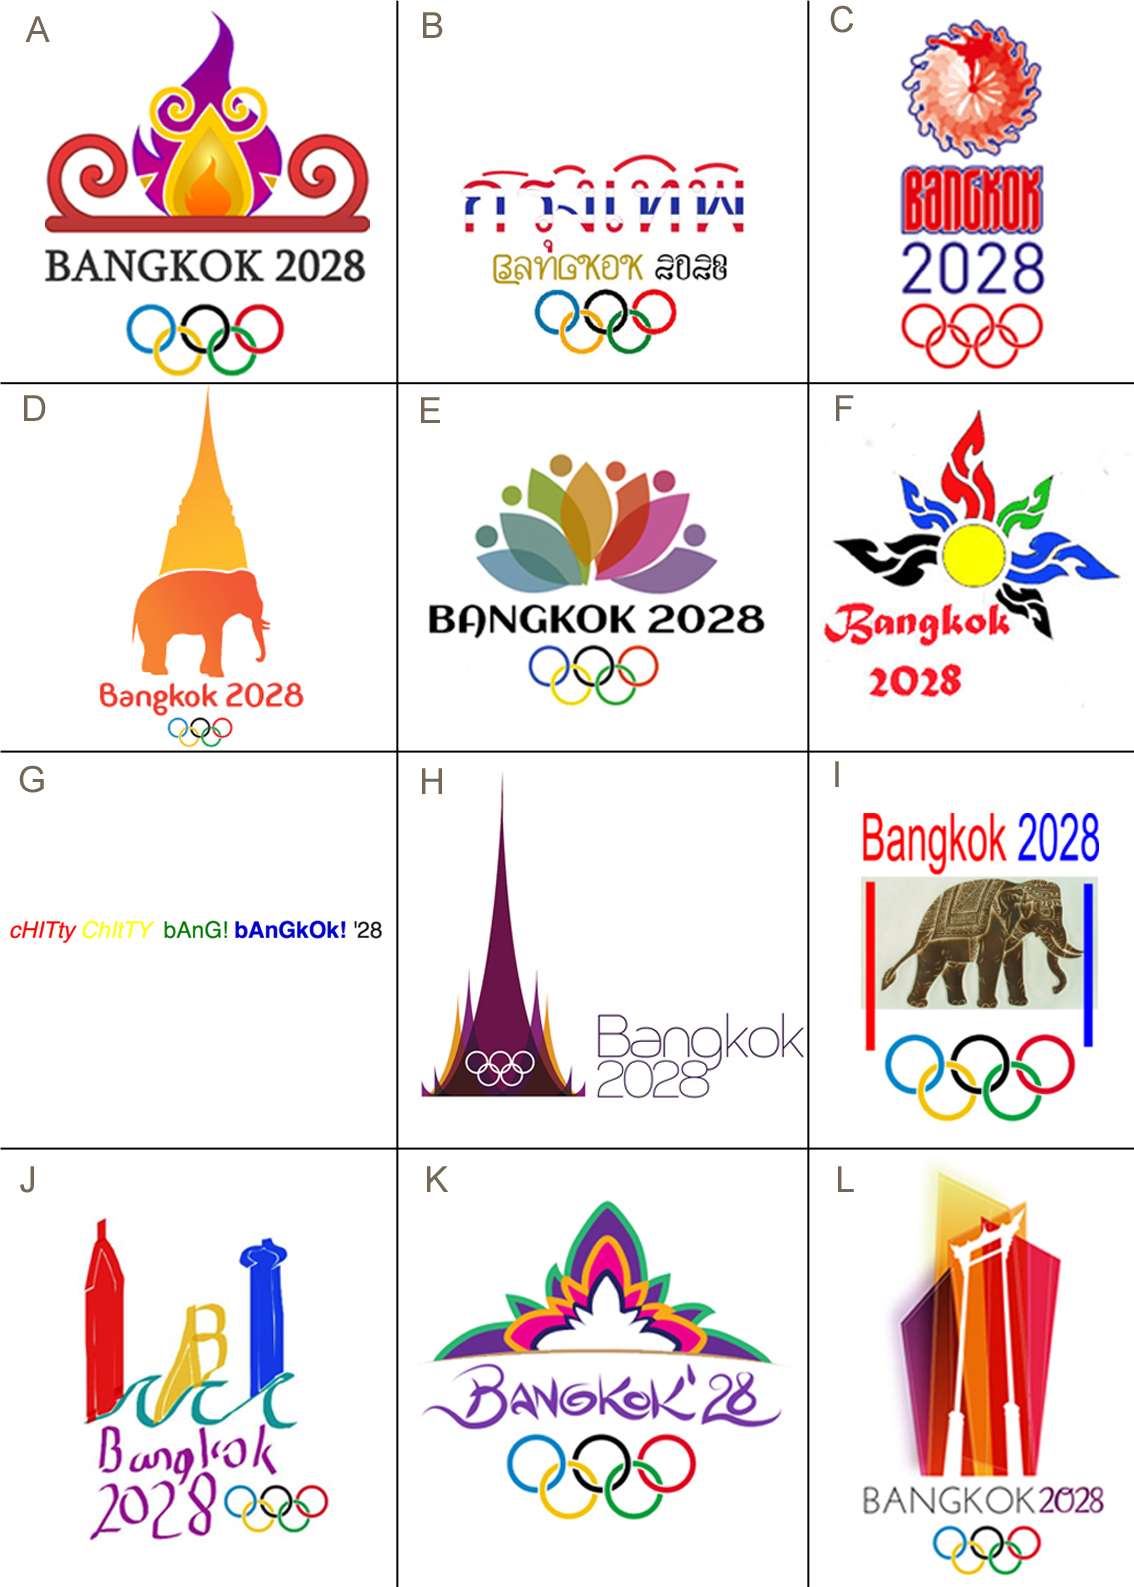 Bangkok 2028 Short List Vote - GamesBids.com Events and ...